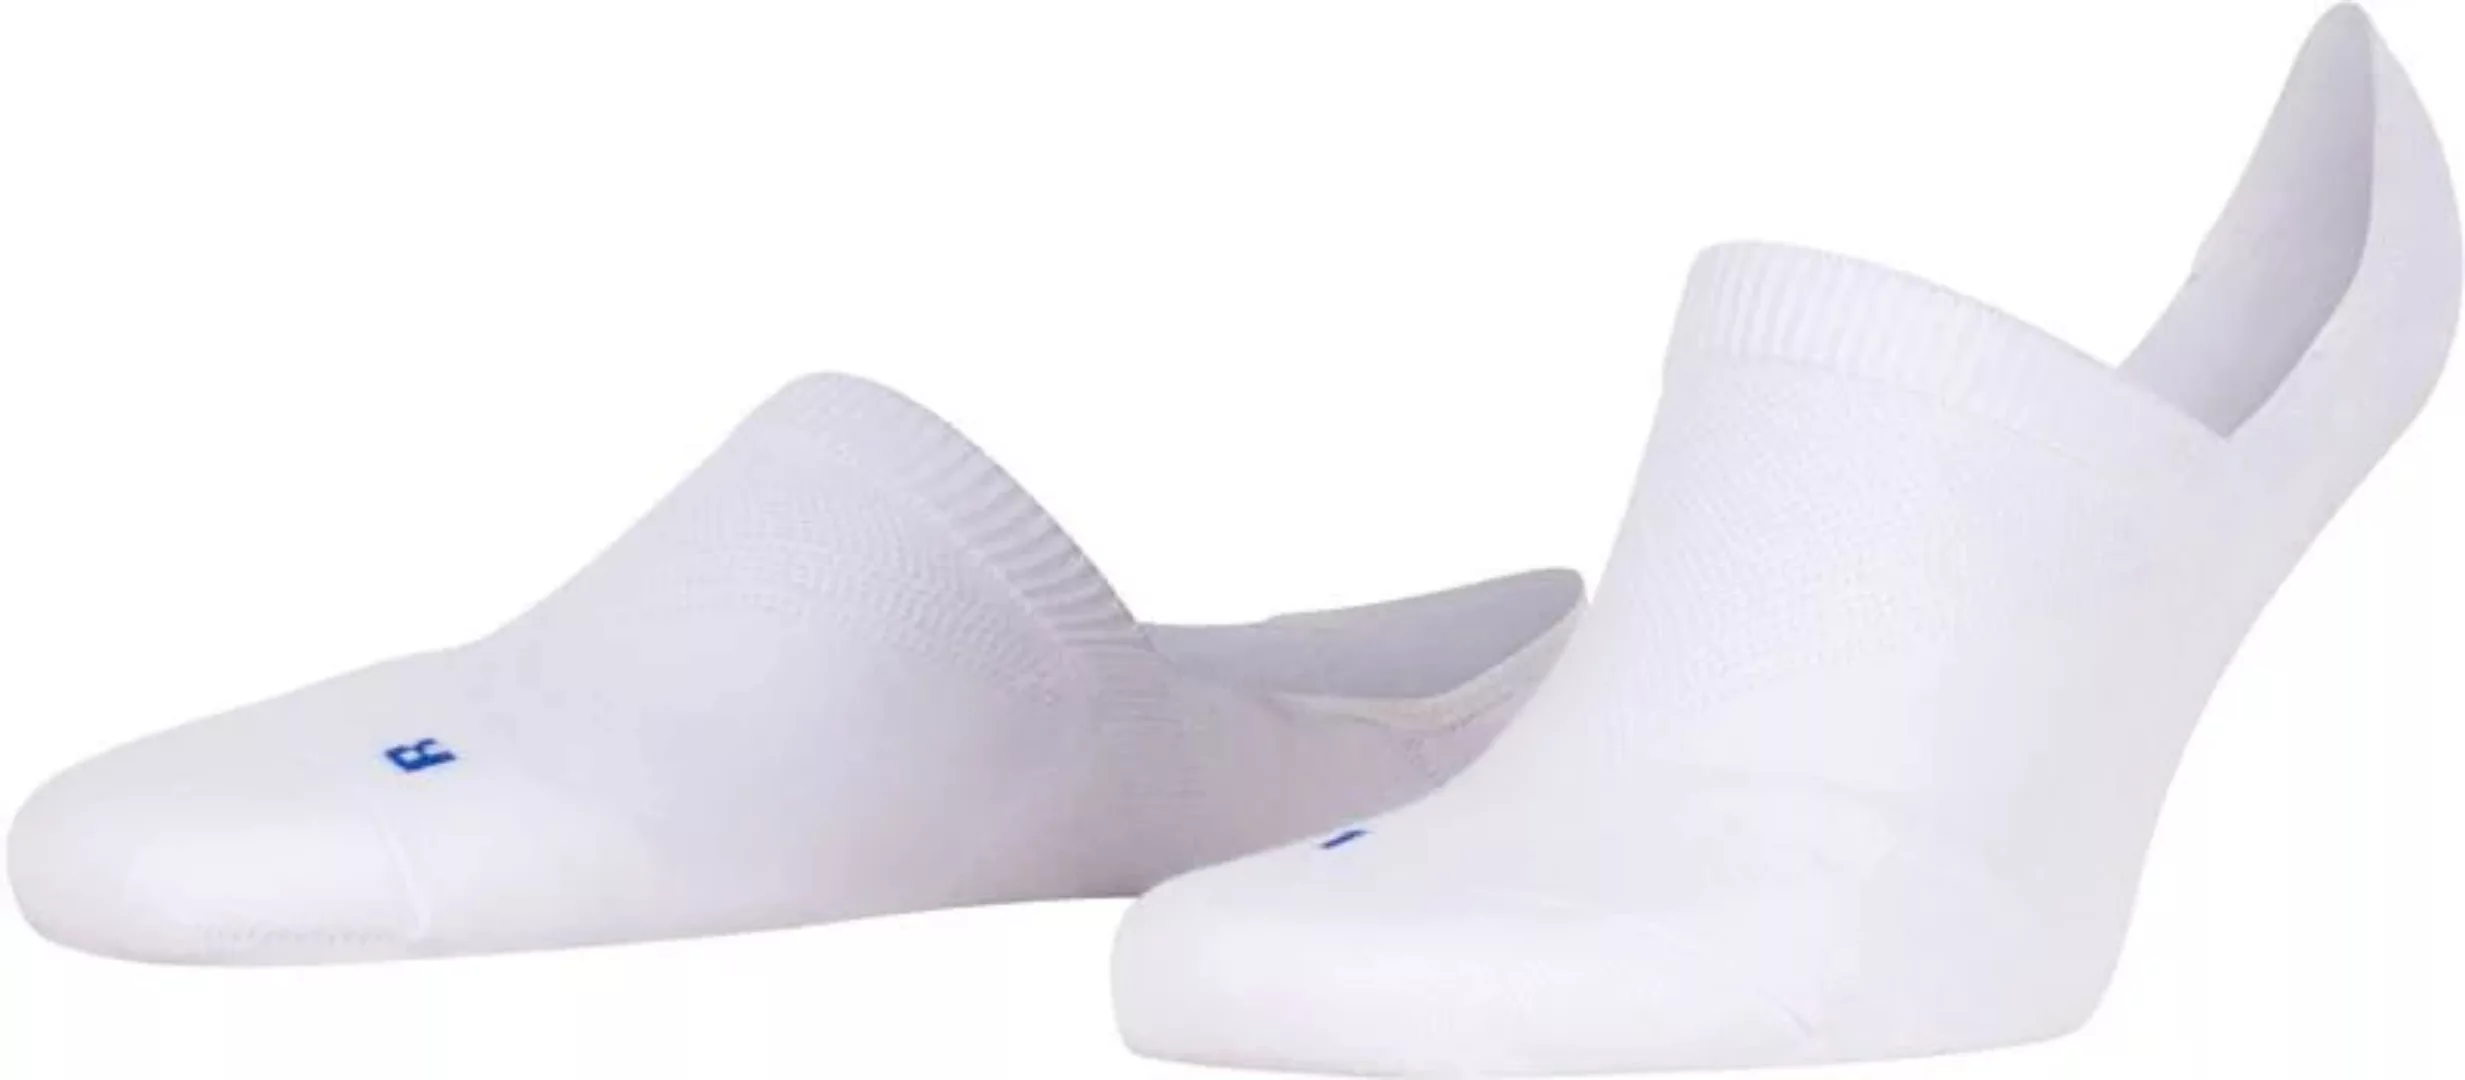 FALKE Cool Kick Antslip Socken Weiß - Größe 44-45 günstig online kaufen